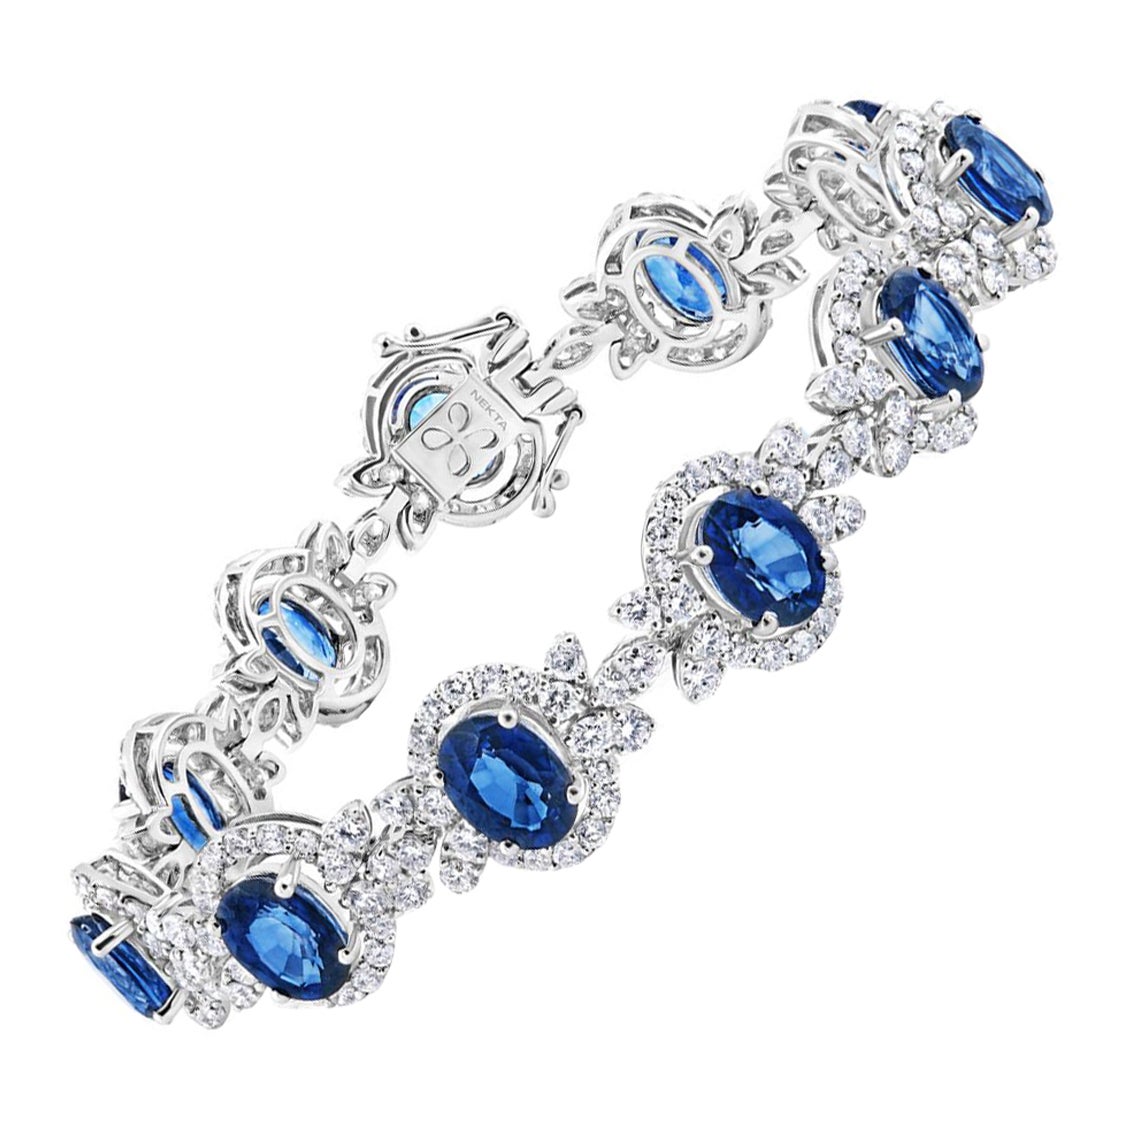 J'adore Bracelet certifié avec saphir bleu taille ovale 25 carats